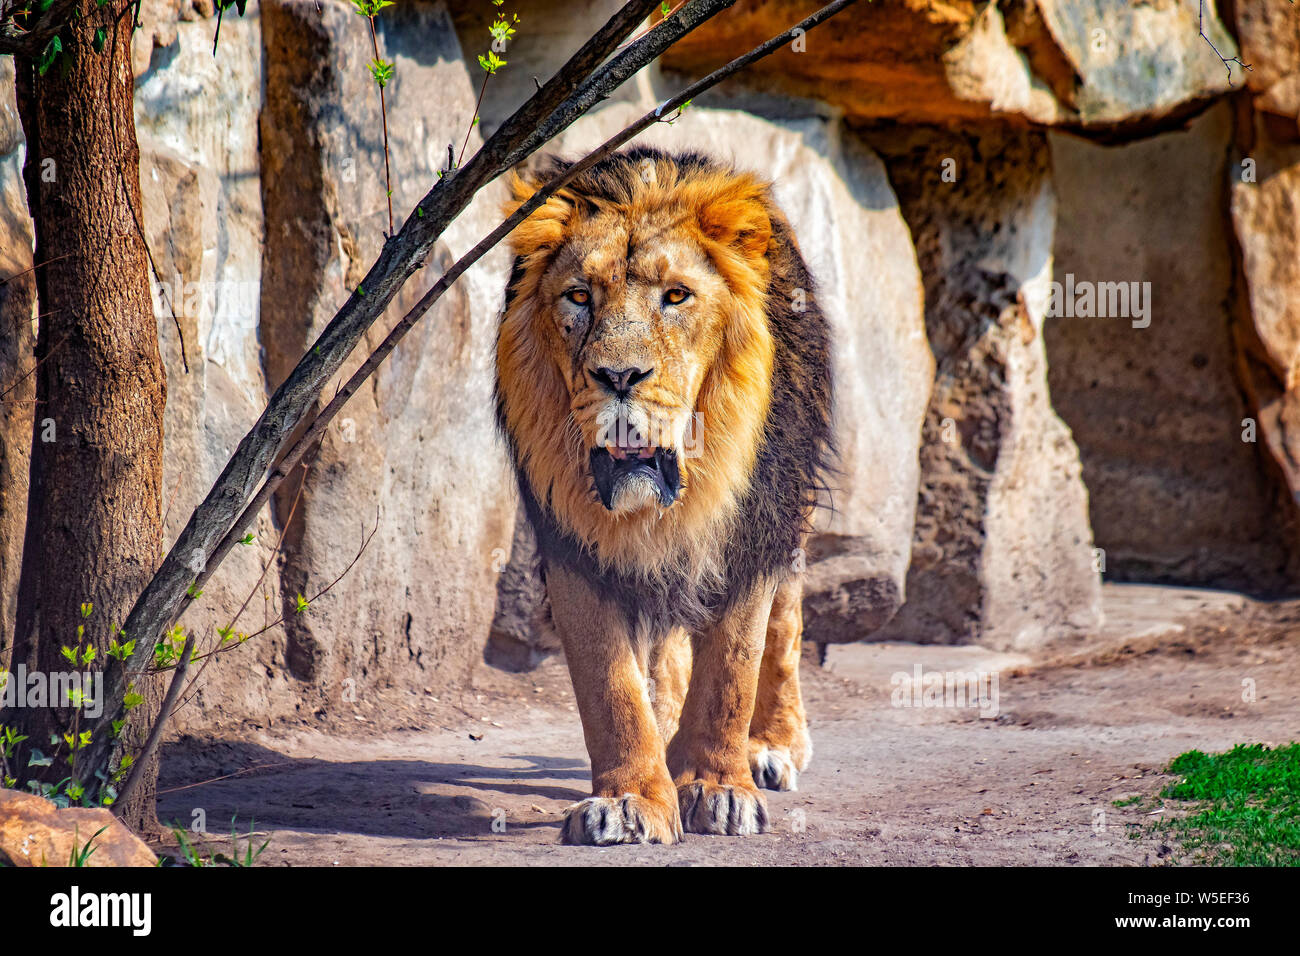 Cerrar Foto de Barbary lion. Él va. El fondo es una roca. Es león africano. El Barbary lion fue una población Panthera leo en el norte Foto de stock